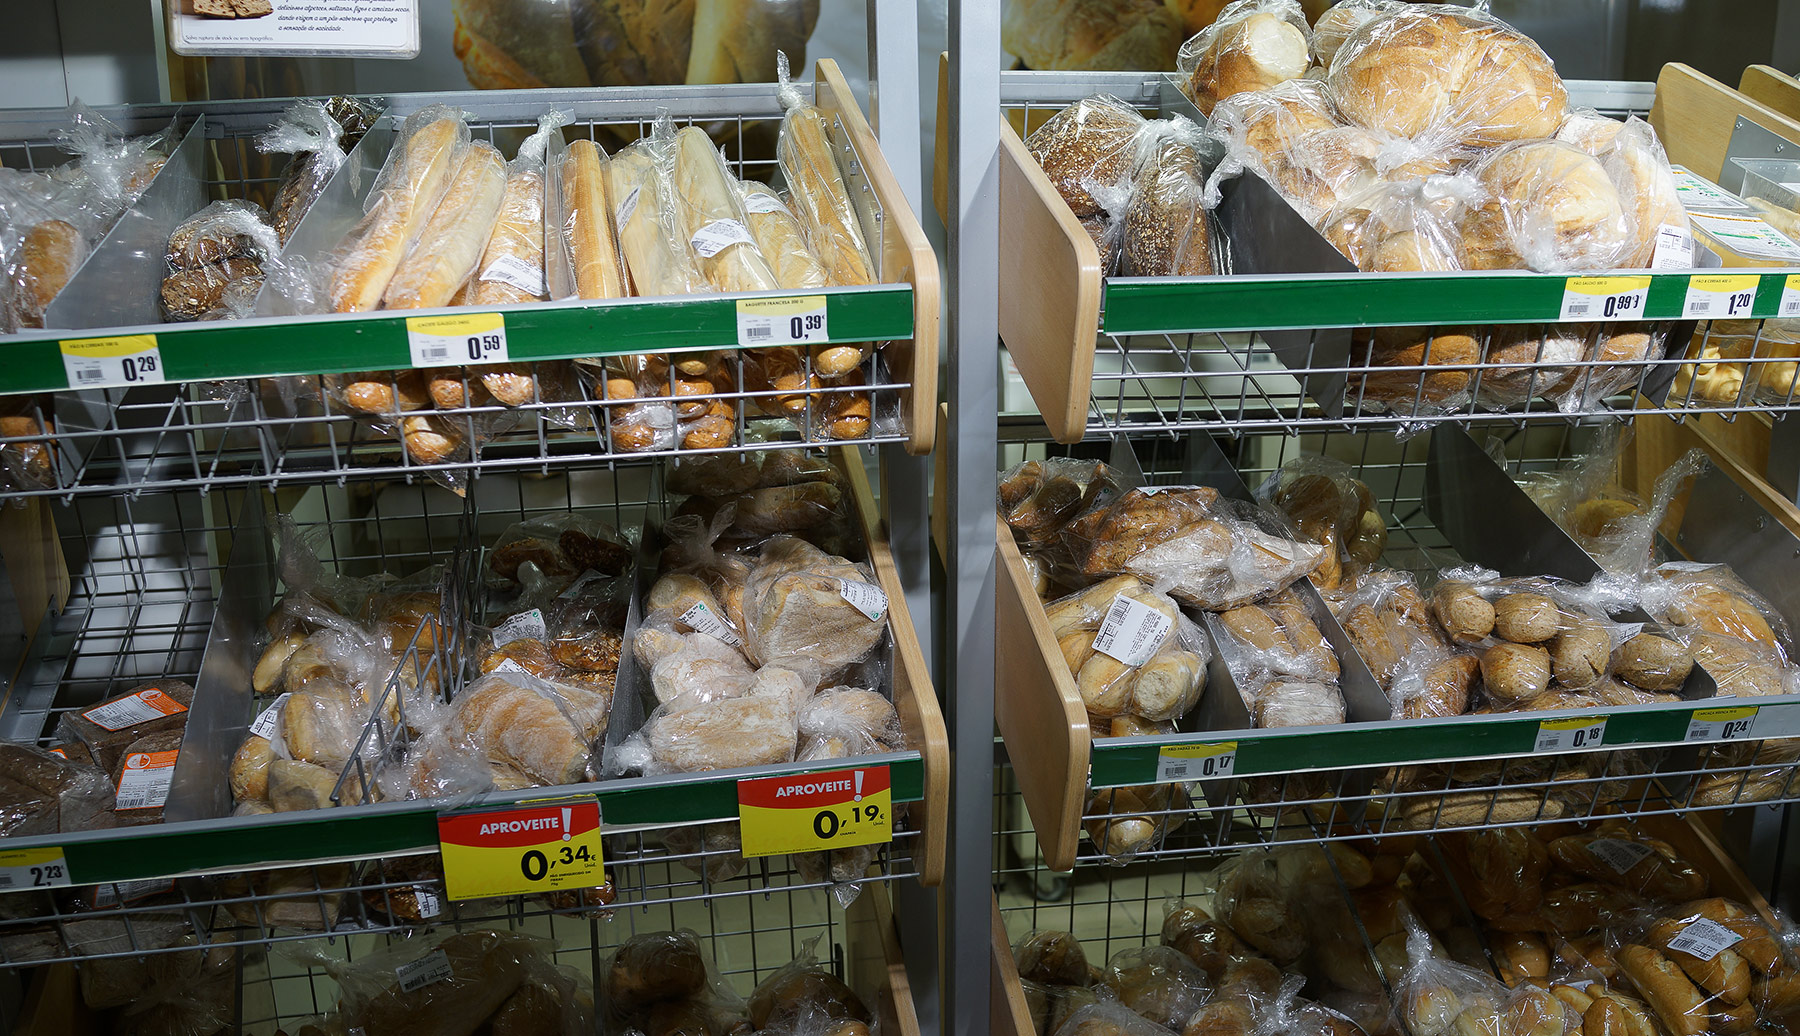 Цены в португальском супермаркете. Насколько выше/ниже российских? DSC02648